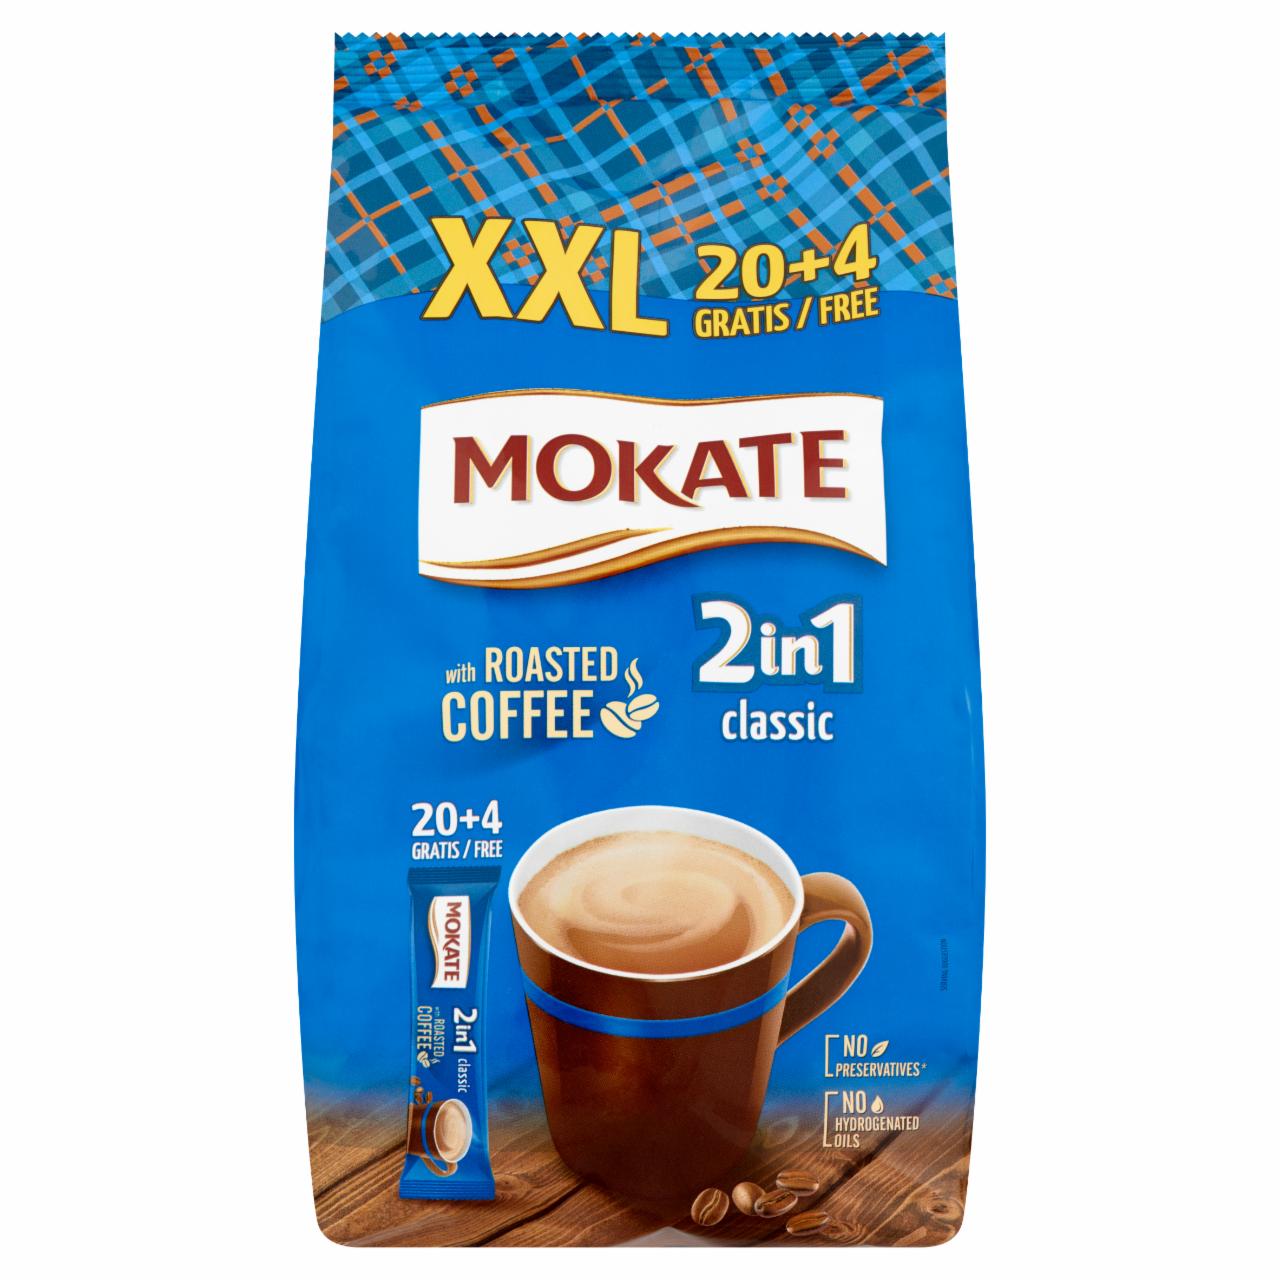 Képek - Mokate 2in1 Classic azonnal oldódó kávéspecialitás